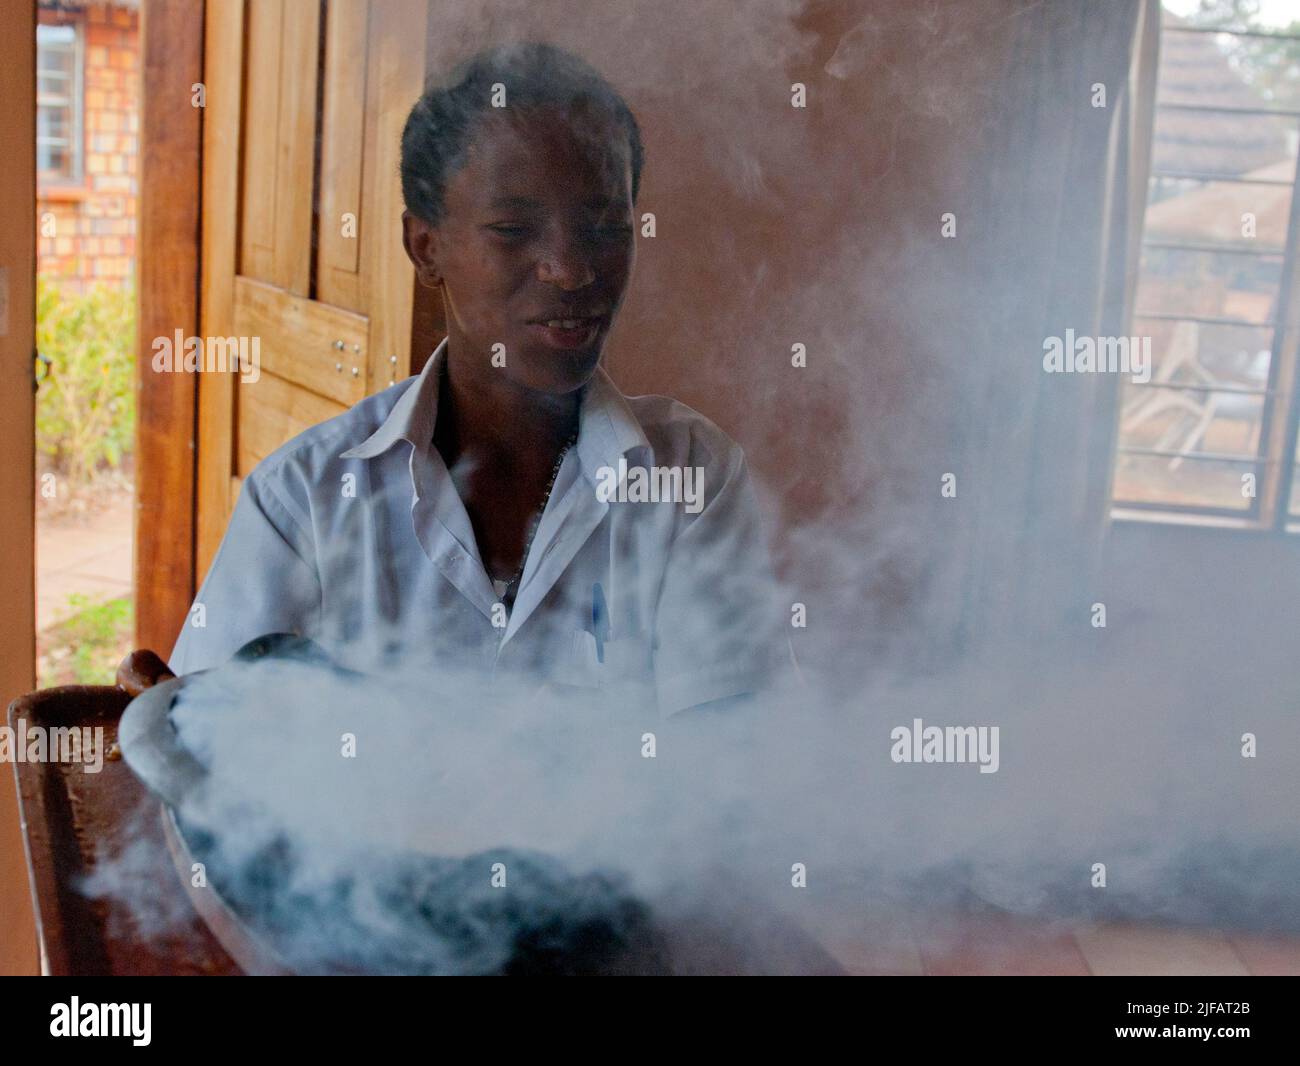 Serving Sizzeling Beef in Masindi, Uganda. Stock Photo